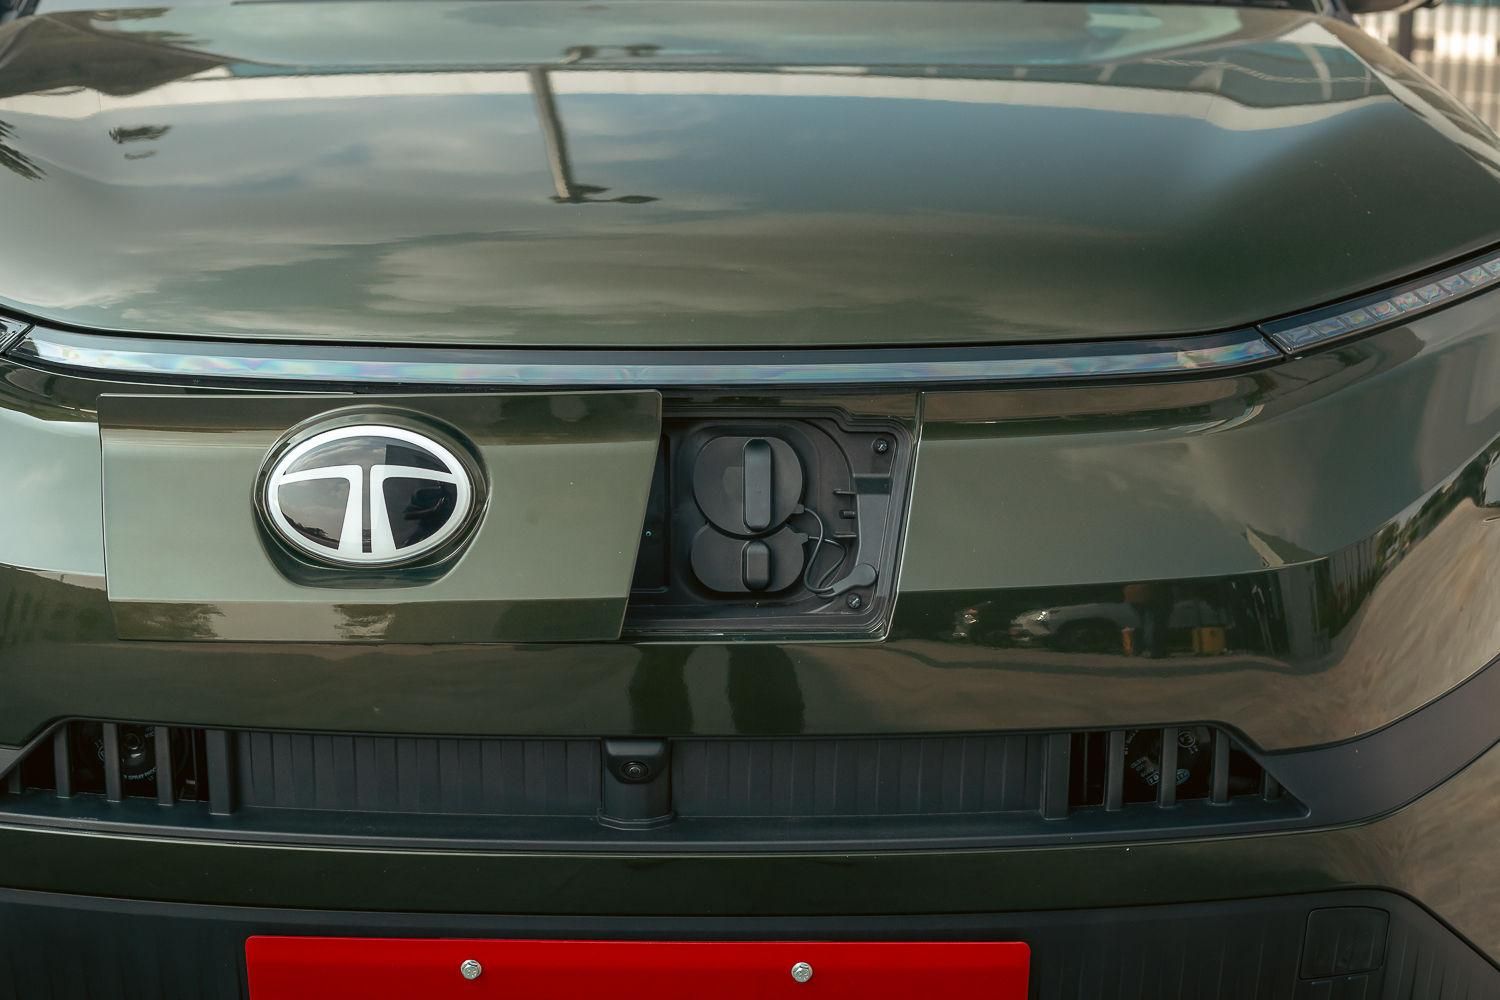 చూడండి: Tata Punch EV ఛార్జింగ్ మూతను మూసివేయడానికి సరైన మార్గం